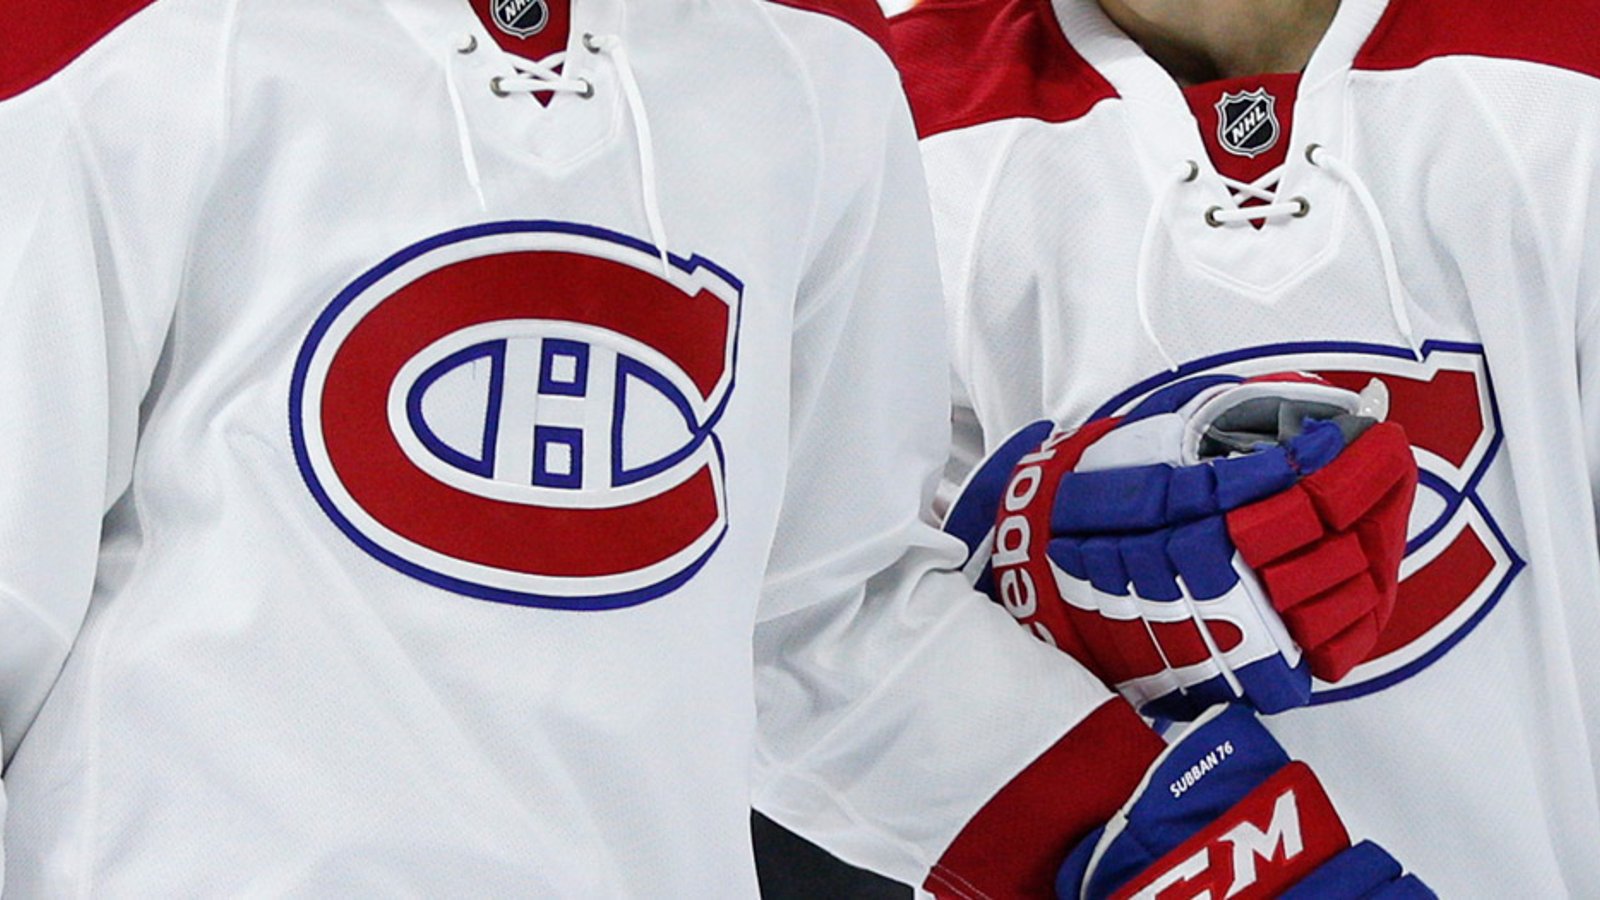 Deux joueurs du Canadien font partie des huit pires contrats de la LNH l'an prochain